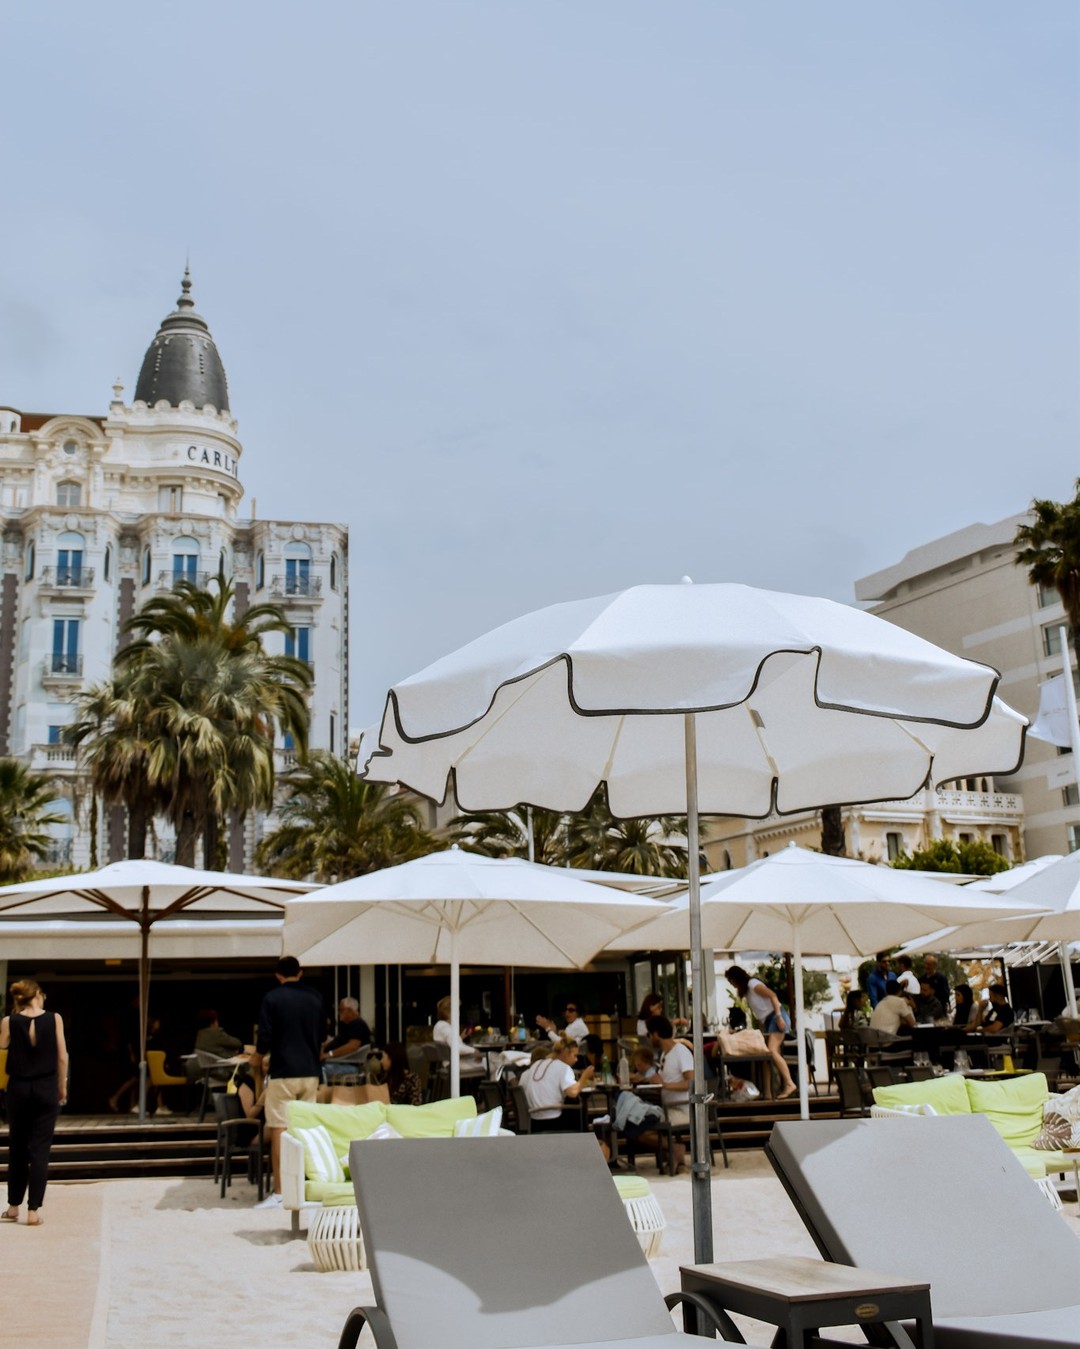 Good morning #Cannes ☀️
L'équipe du #VegalunaPlage vous souhaite une belle journée 💙
_
Boulevard de la Croisette, Cannes
04.93.43.67.05
www.vegaluna.fr  #food #restaurant  #beach #cotedazur #plage #summer #frenchriviera